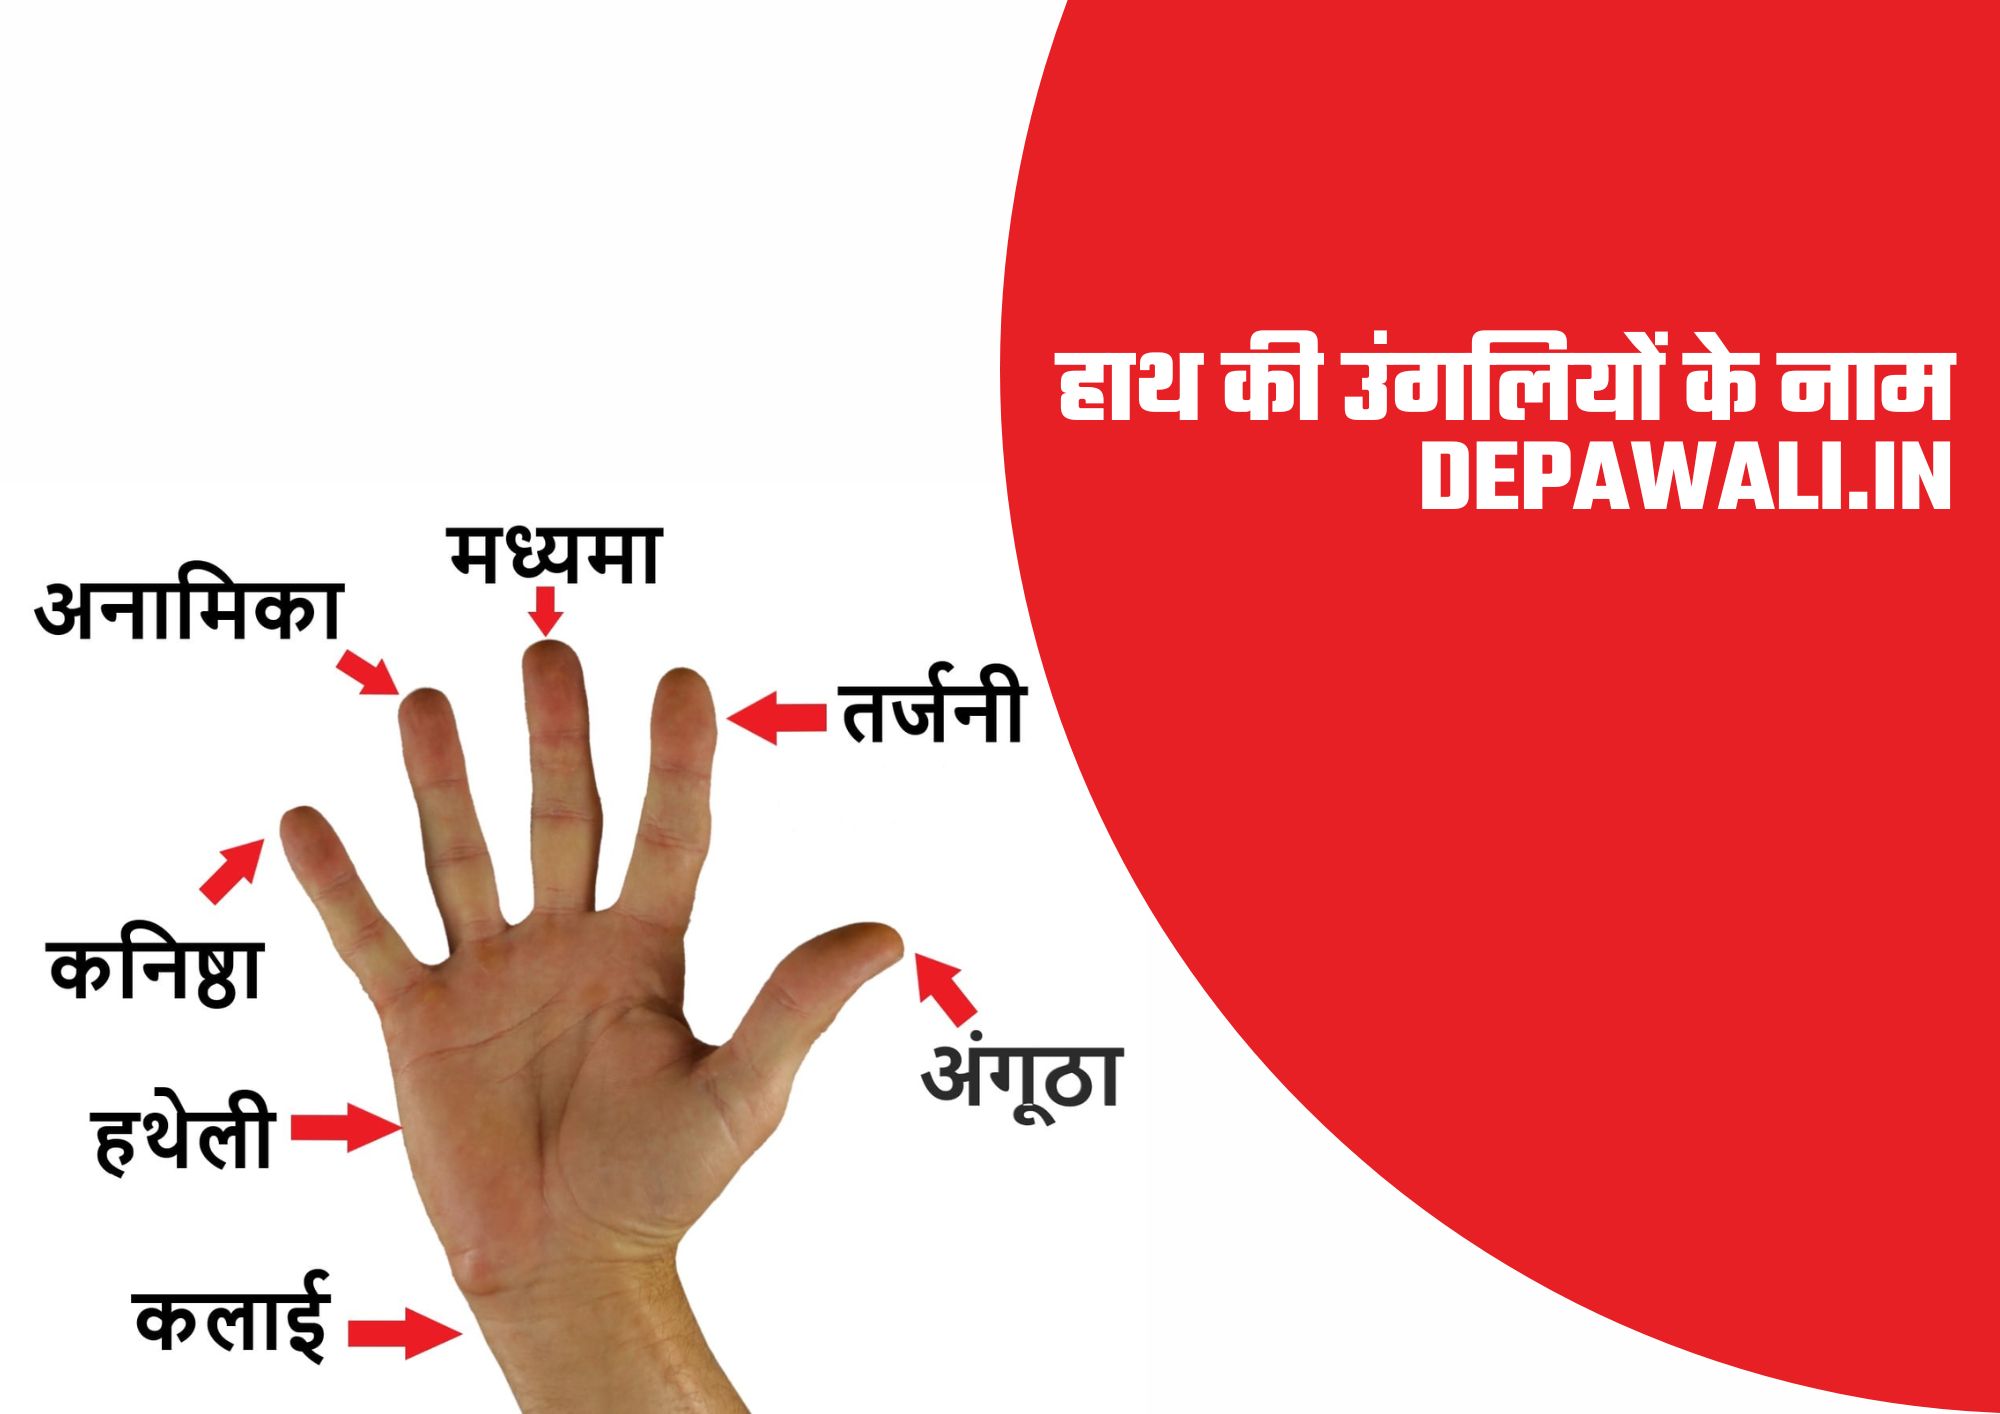 हाथ की उंगलियों के नाम (Names Of Fingers In Hindi and English) - Fingers Name In English And Hindi - Fingers Name In Hindi and English